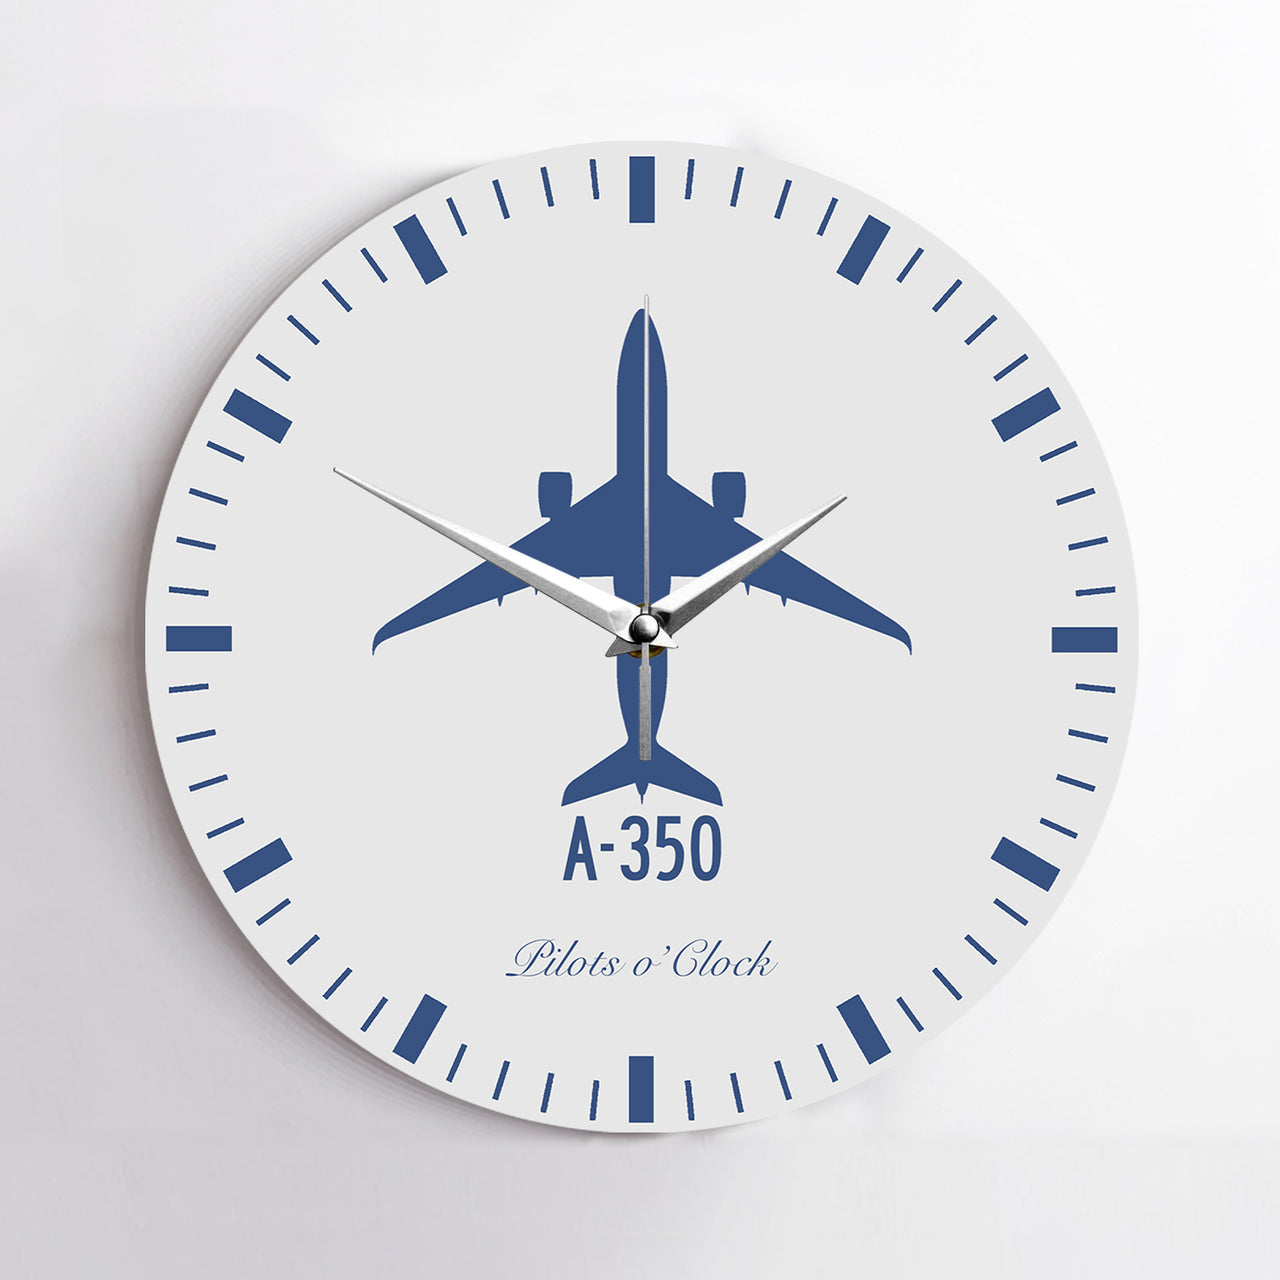 Airbus A350 Printed Wall Clocks